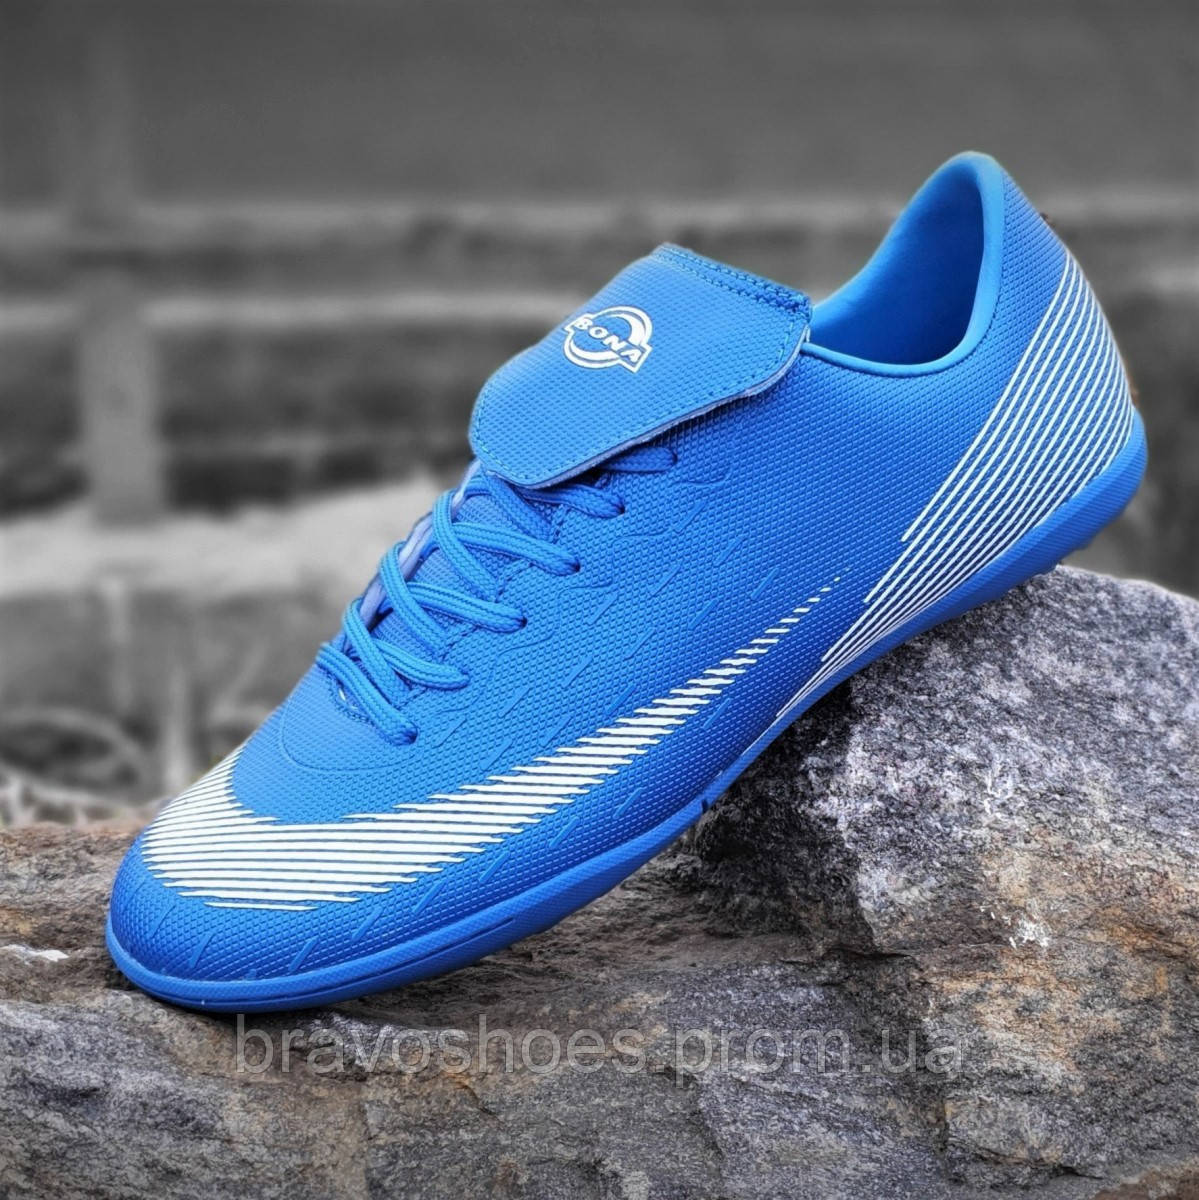 

Мужские сороконожки Mercurial, бампы, кроссовки для футбола синие, футбольная обувь, легкие (Код: Б1403) 43, Синий